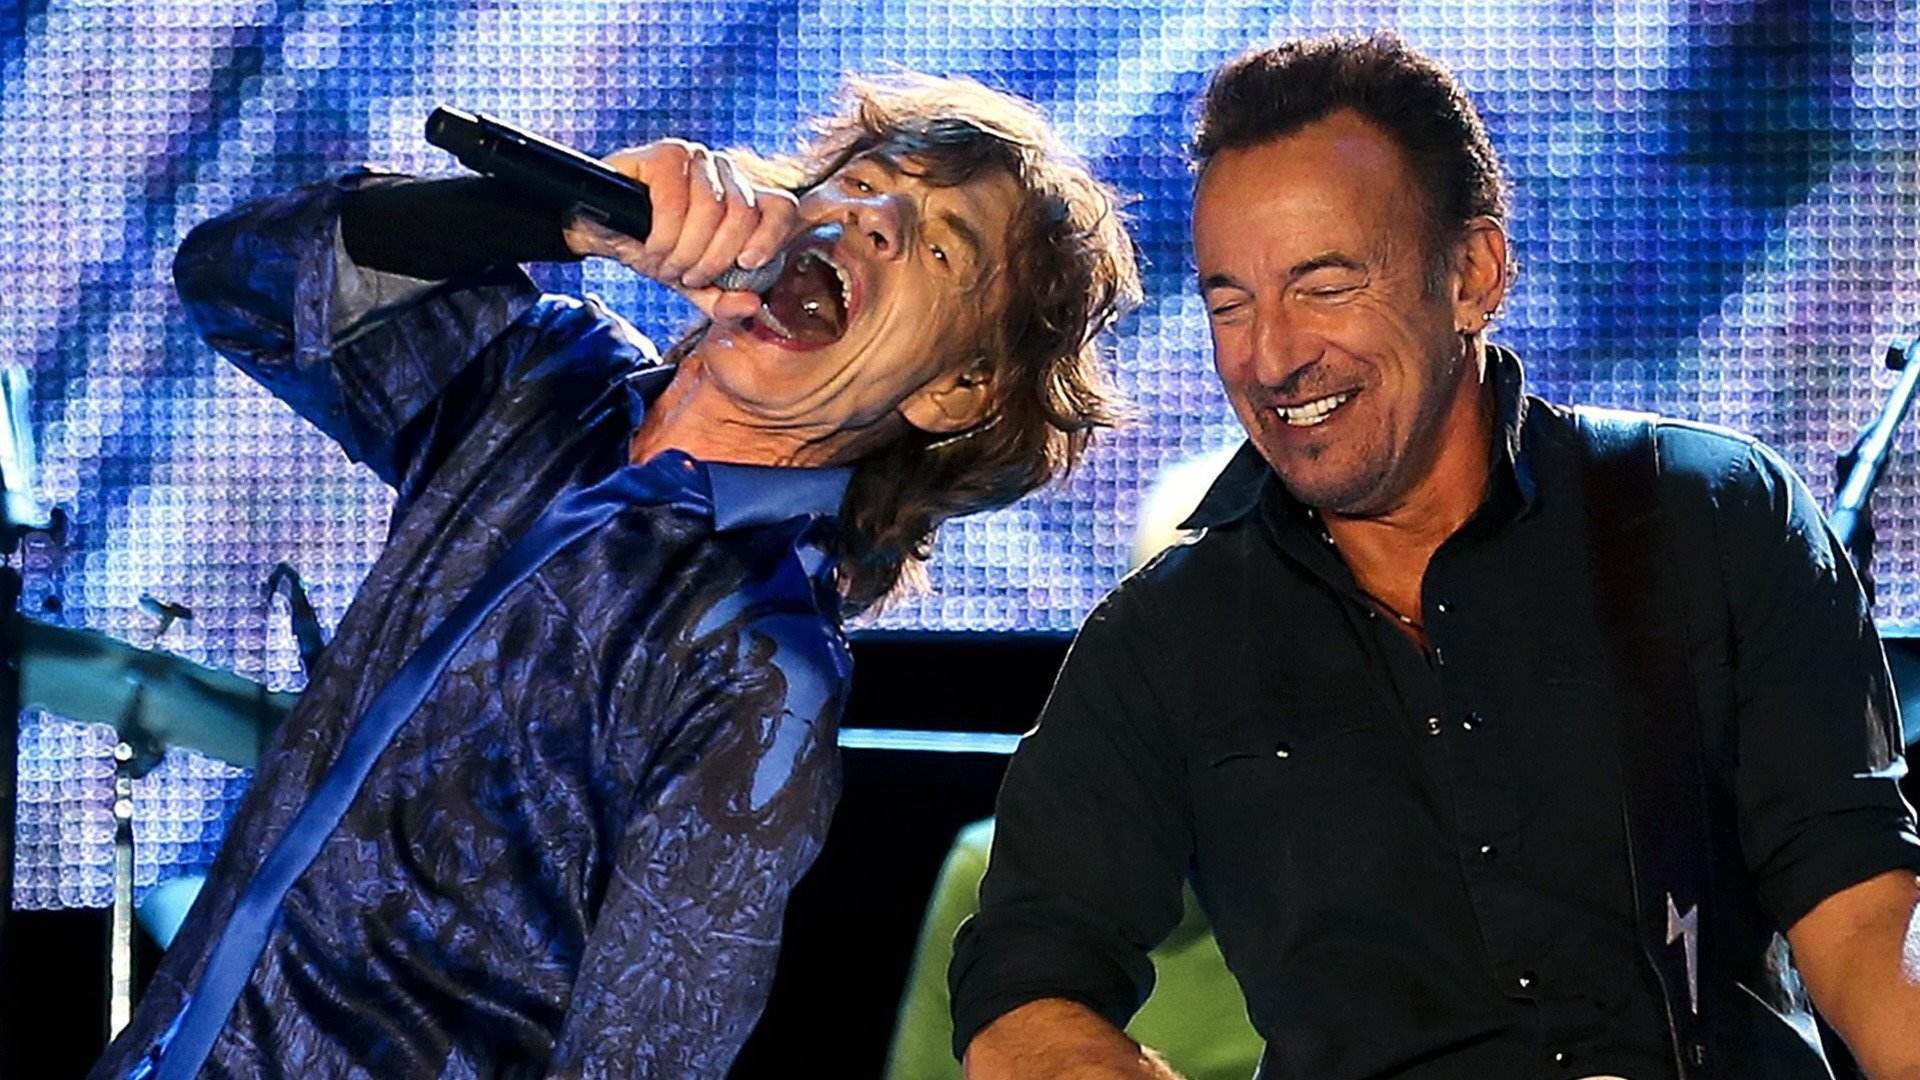 El rock and roll es más soft que nunca: Mick Jagger, Springsteen y otros; yoga y brócoli